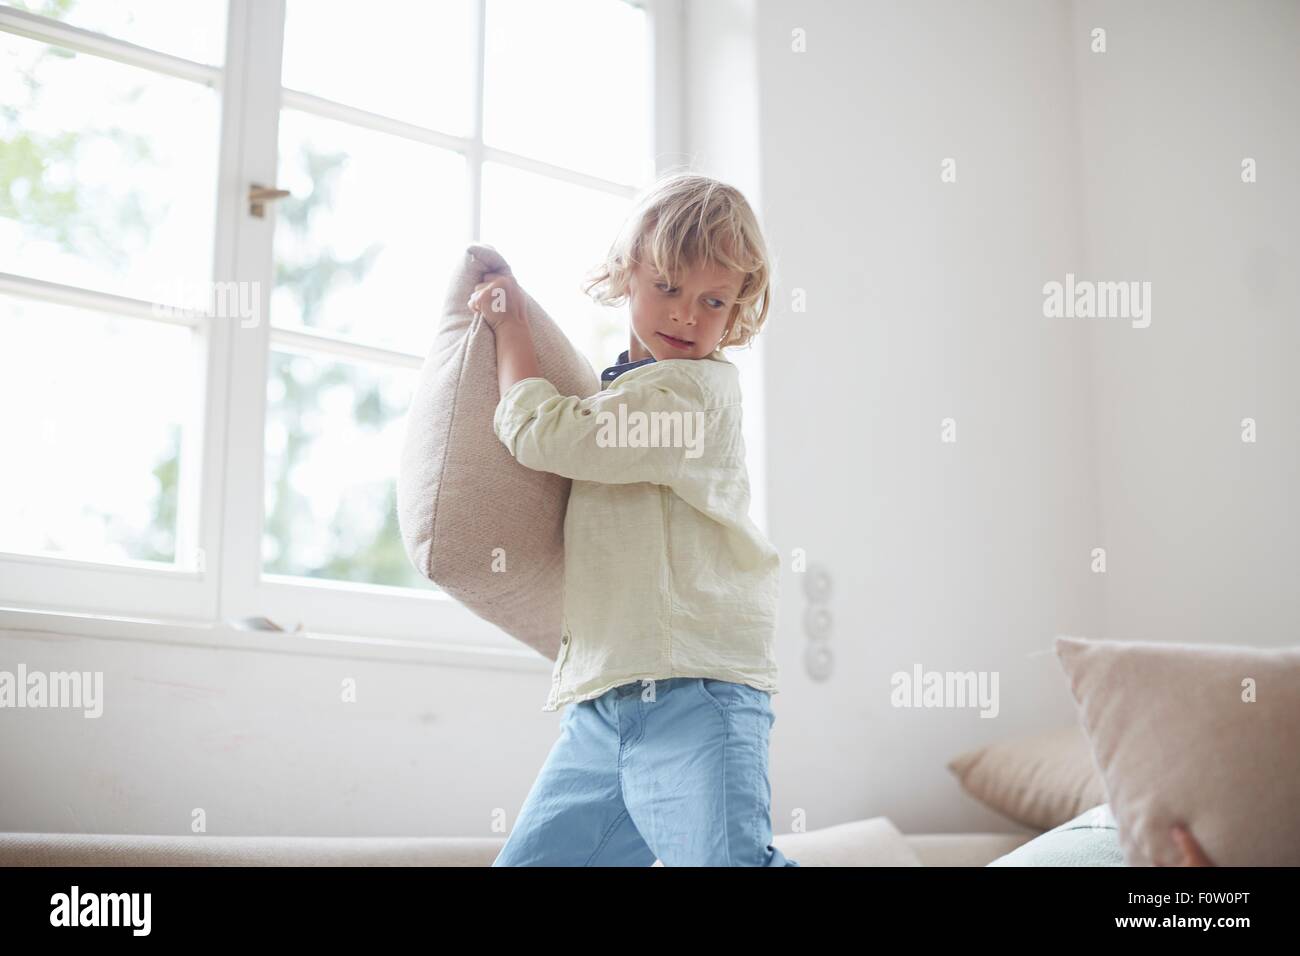 Boy holding pillow preparing to throw Stock Photo